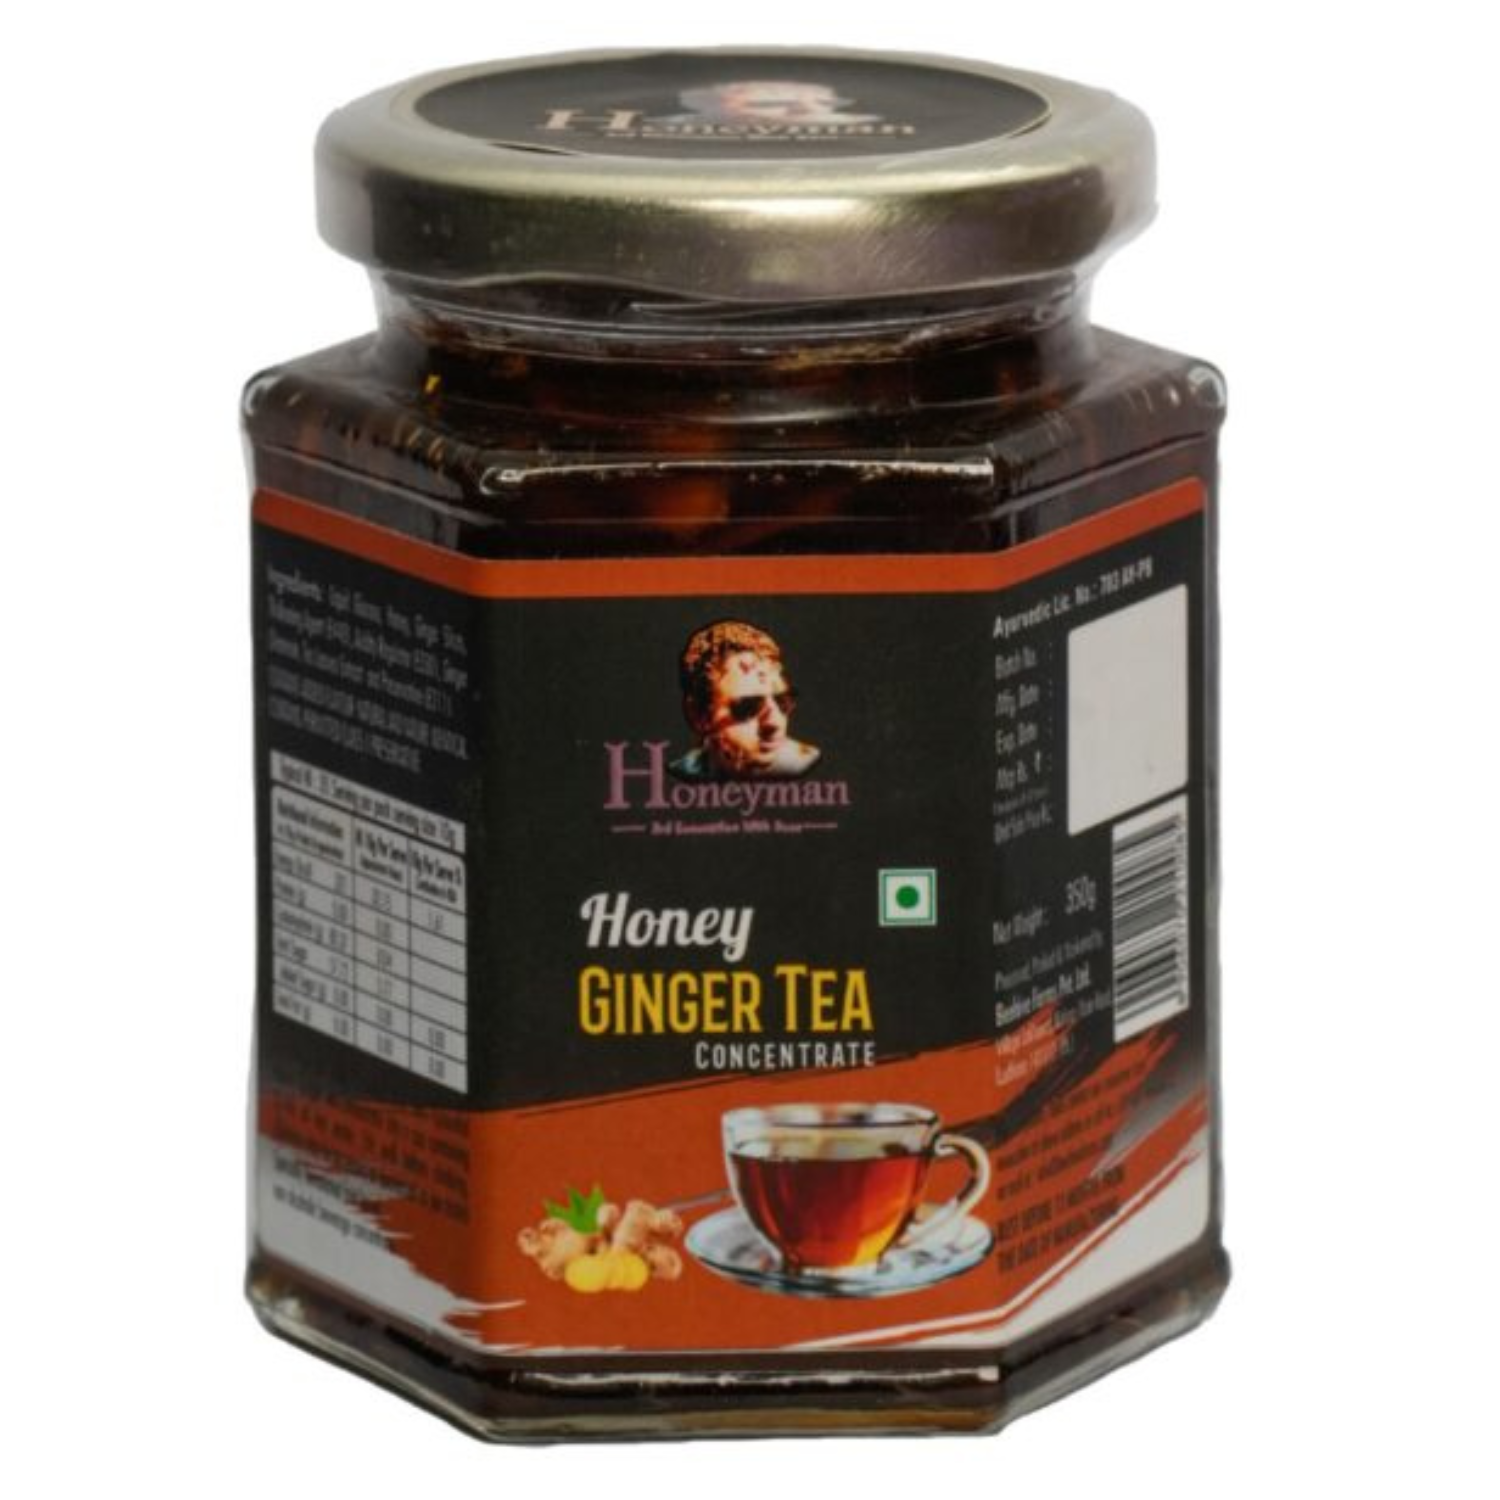 Honeyman Ginger Tea Hexa Glass